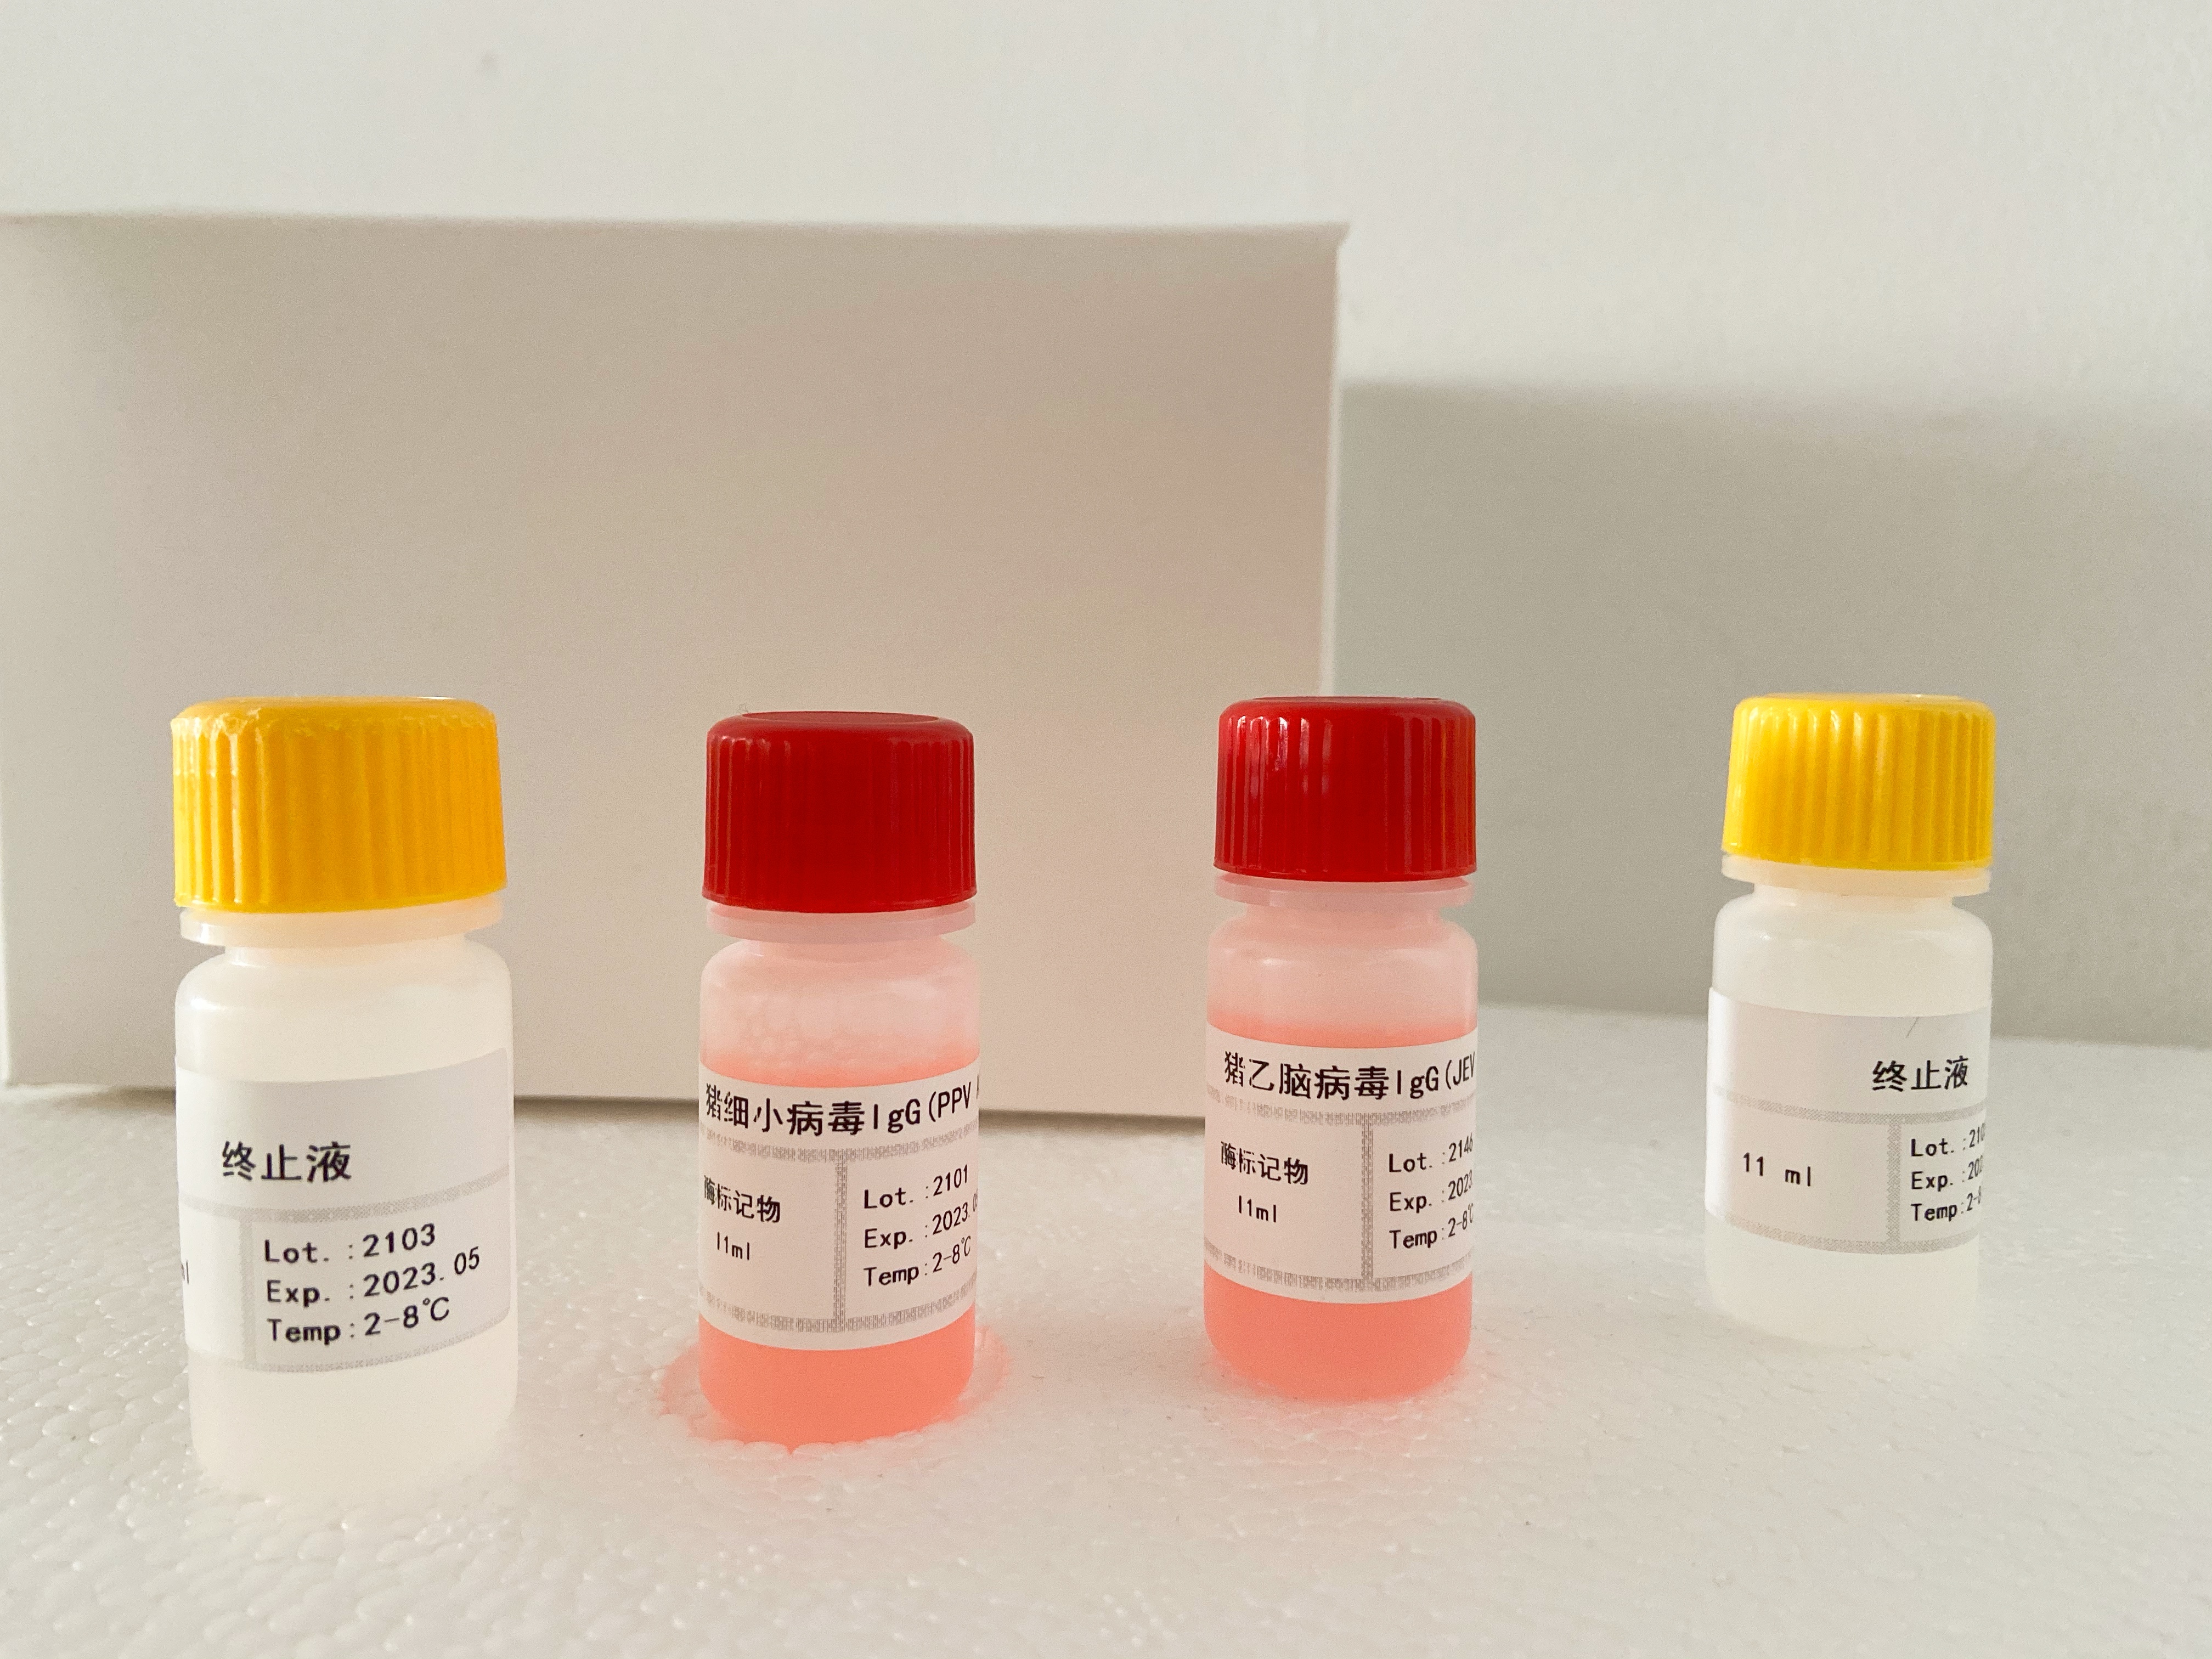 猪二胺氧化酶(DAO)检测试剂盒